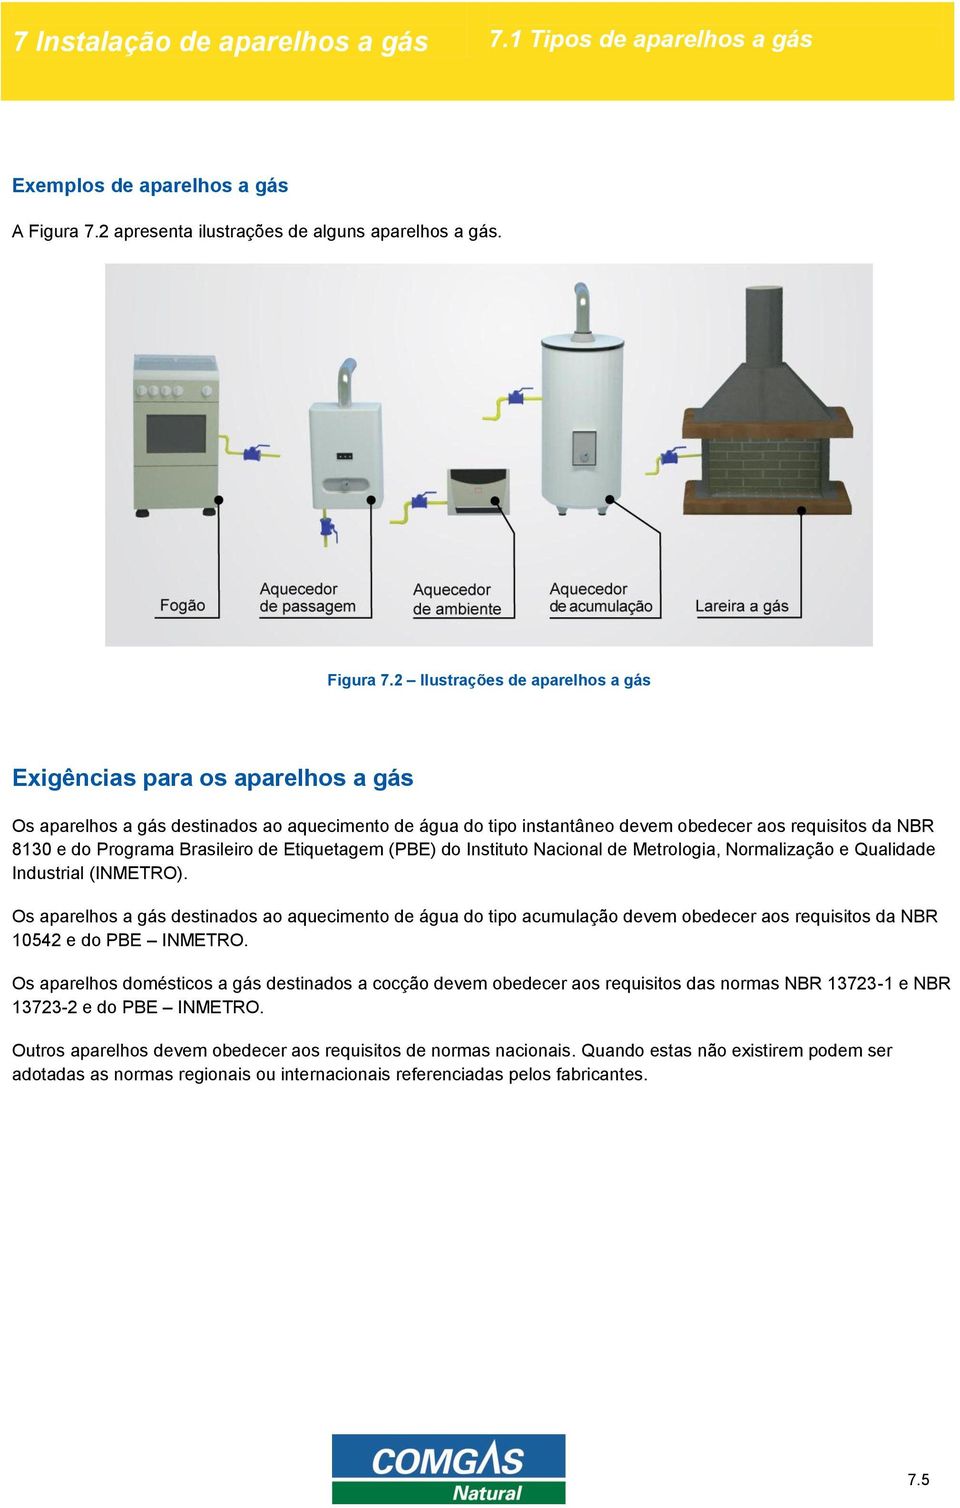 2 Ilustrações de aparelhos a gás Exigências para os aparelhos a gás Os aparelhos a gás destinados ao aquecimento de água do tipo instantâneo devem obedecer aos requisitos da NBR 8130 e do Programa